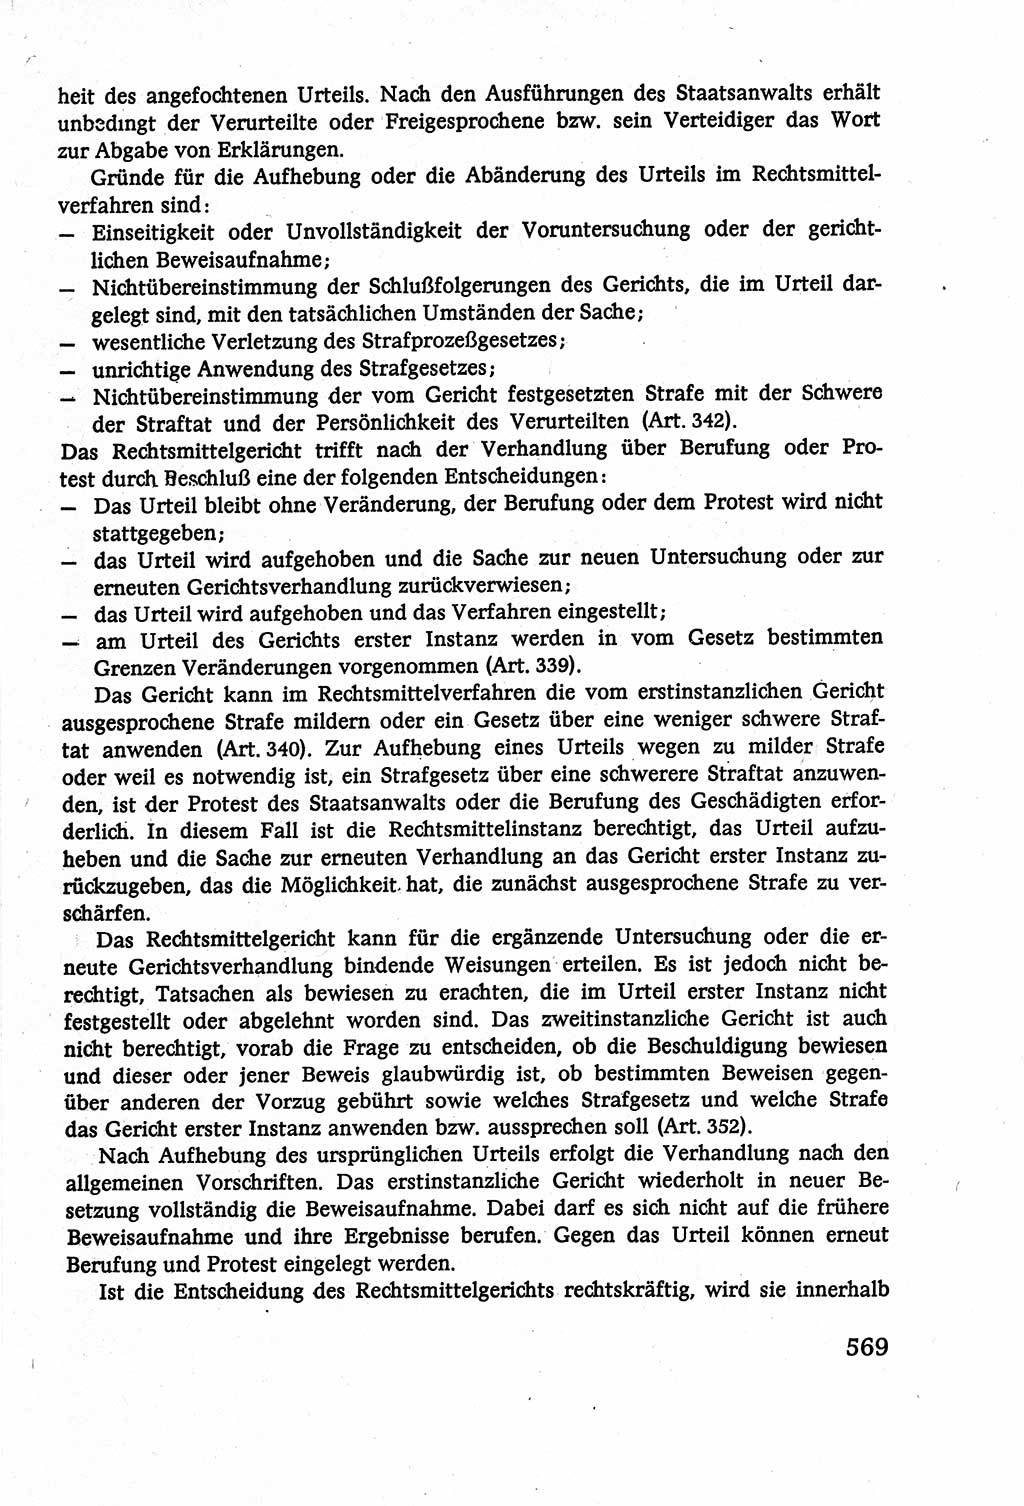 Strafverfahrensrecht [Deutsche Demokratische Republik (DDR)], Lehrbuch 1977, Seite 569 (Strafverf.-R. DDR Lb. 1977, S. 569)